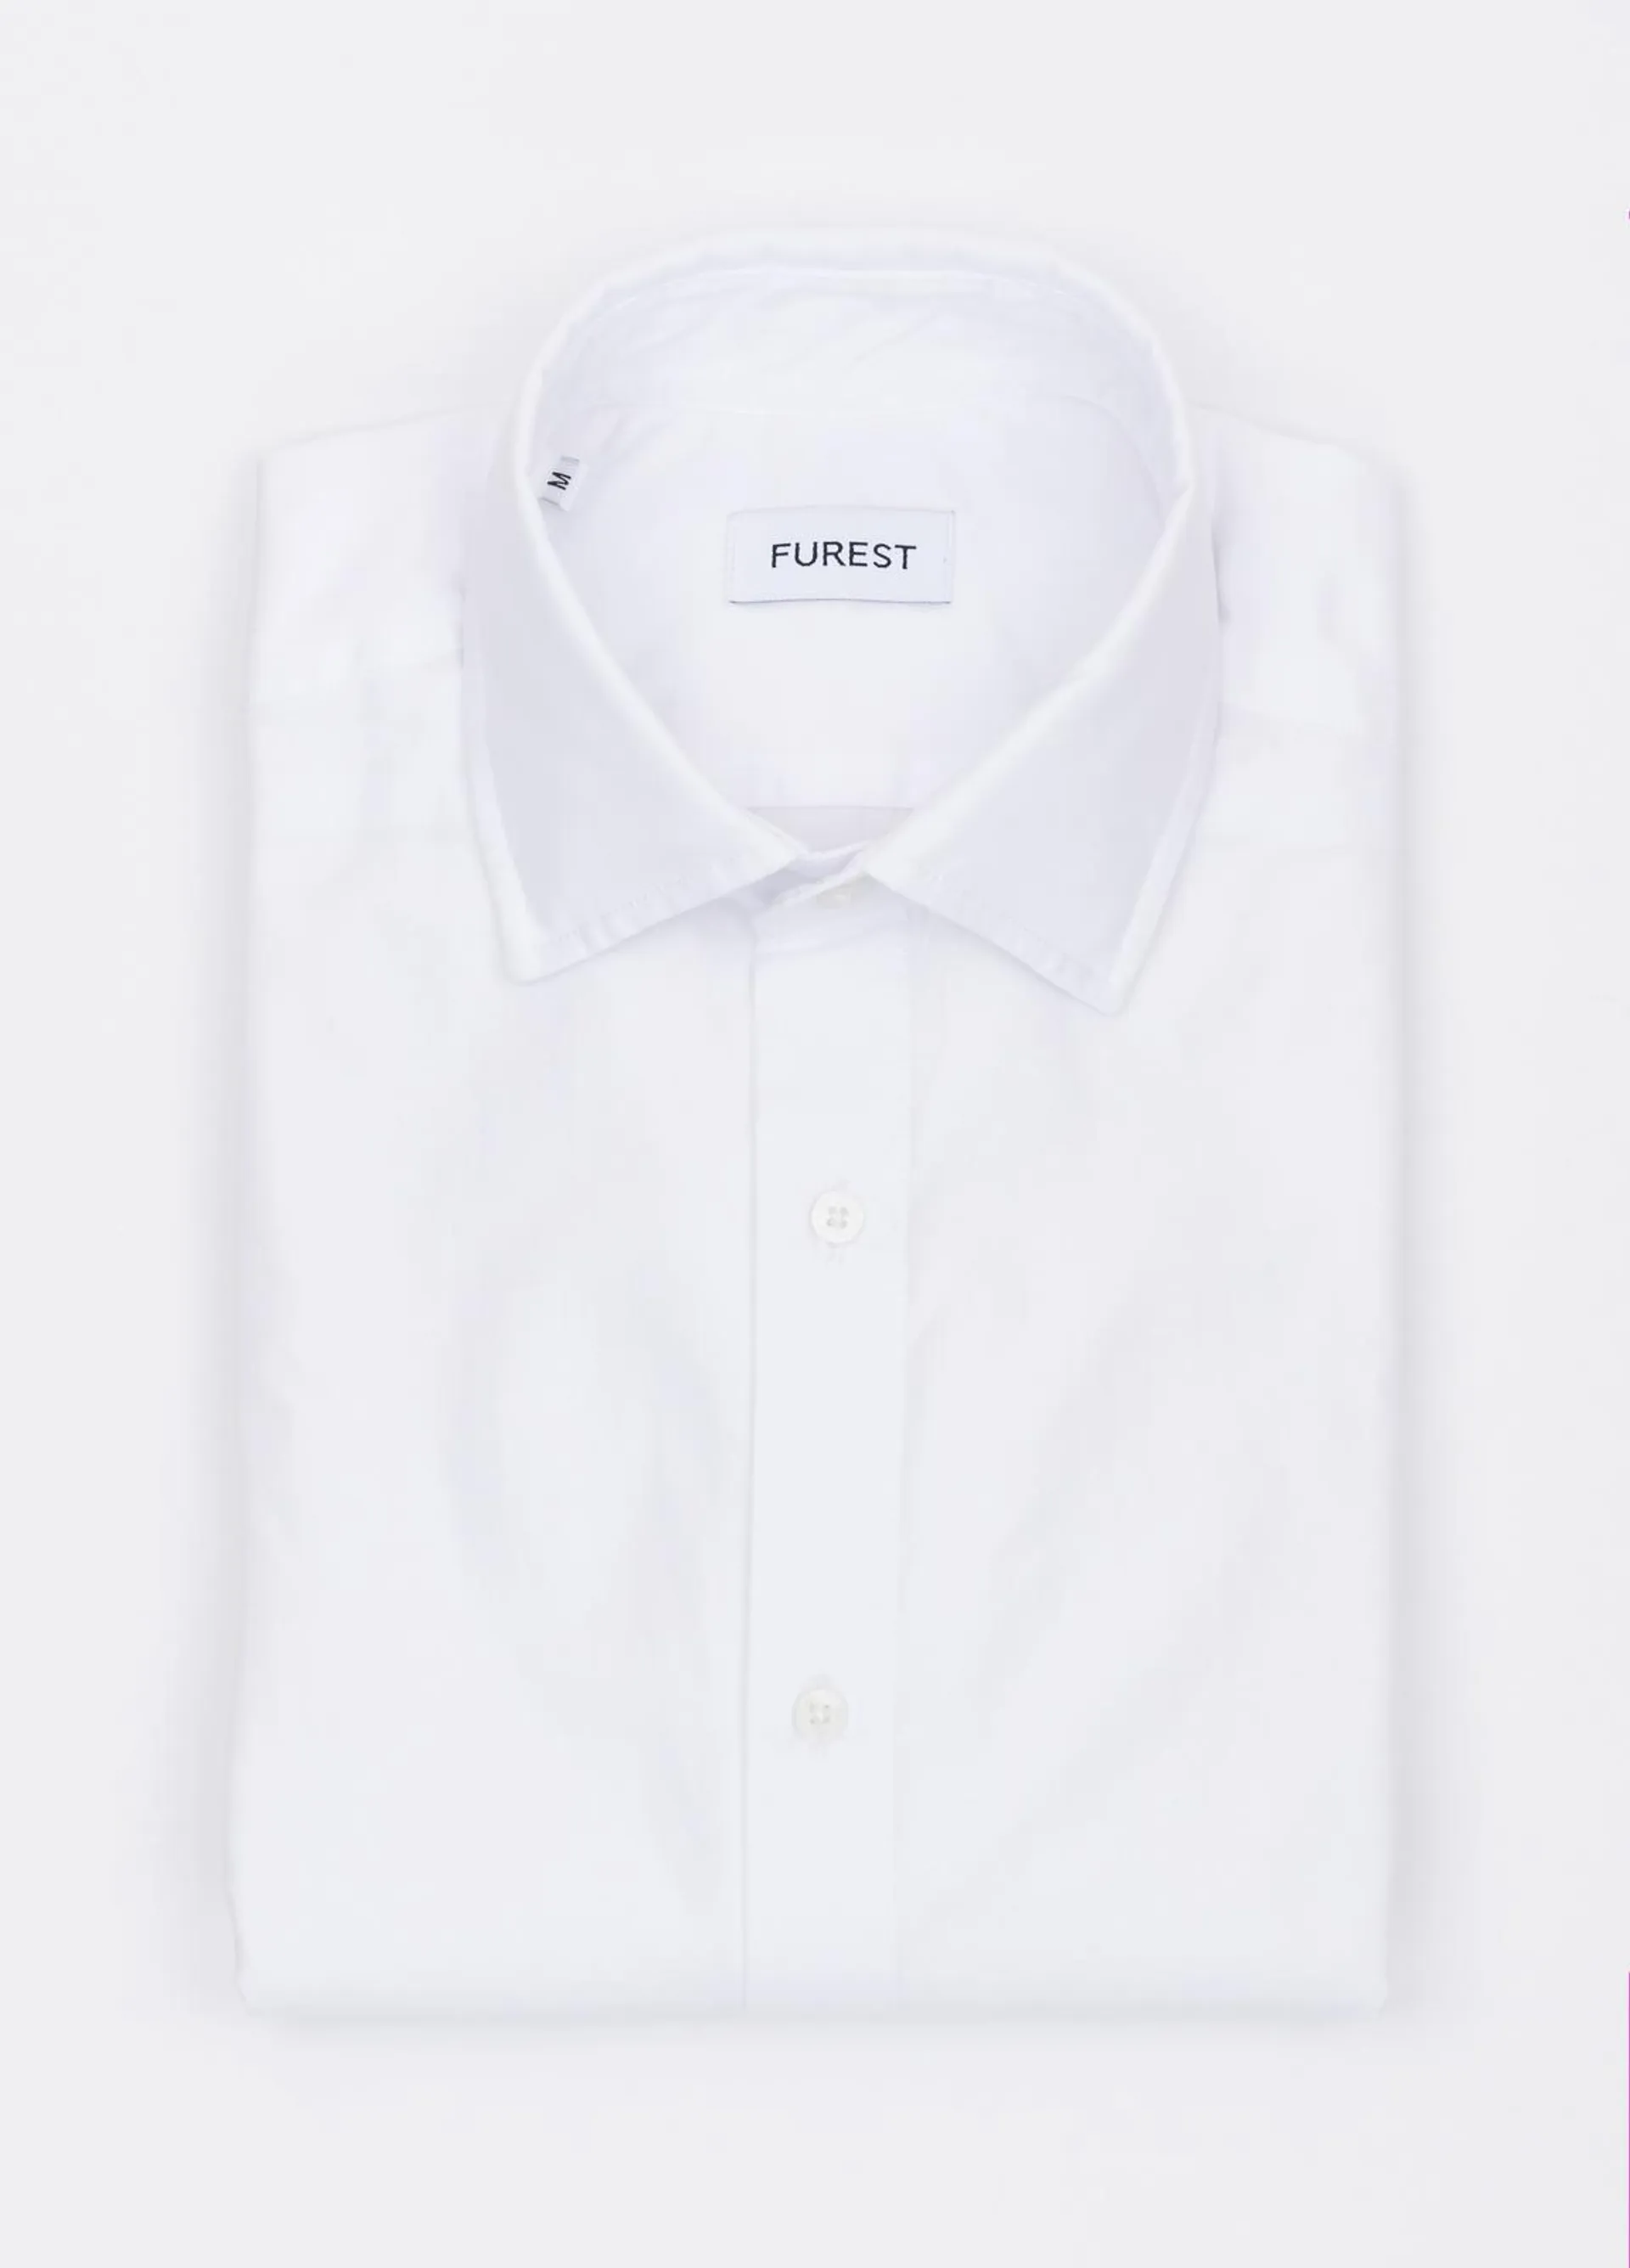 Camisa sport FUREST COLECCIÓN algodón Pinpoit blanca